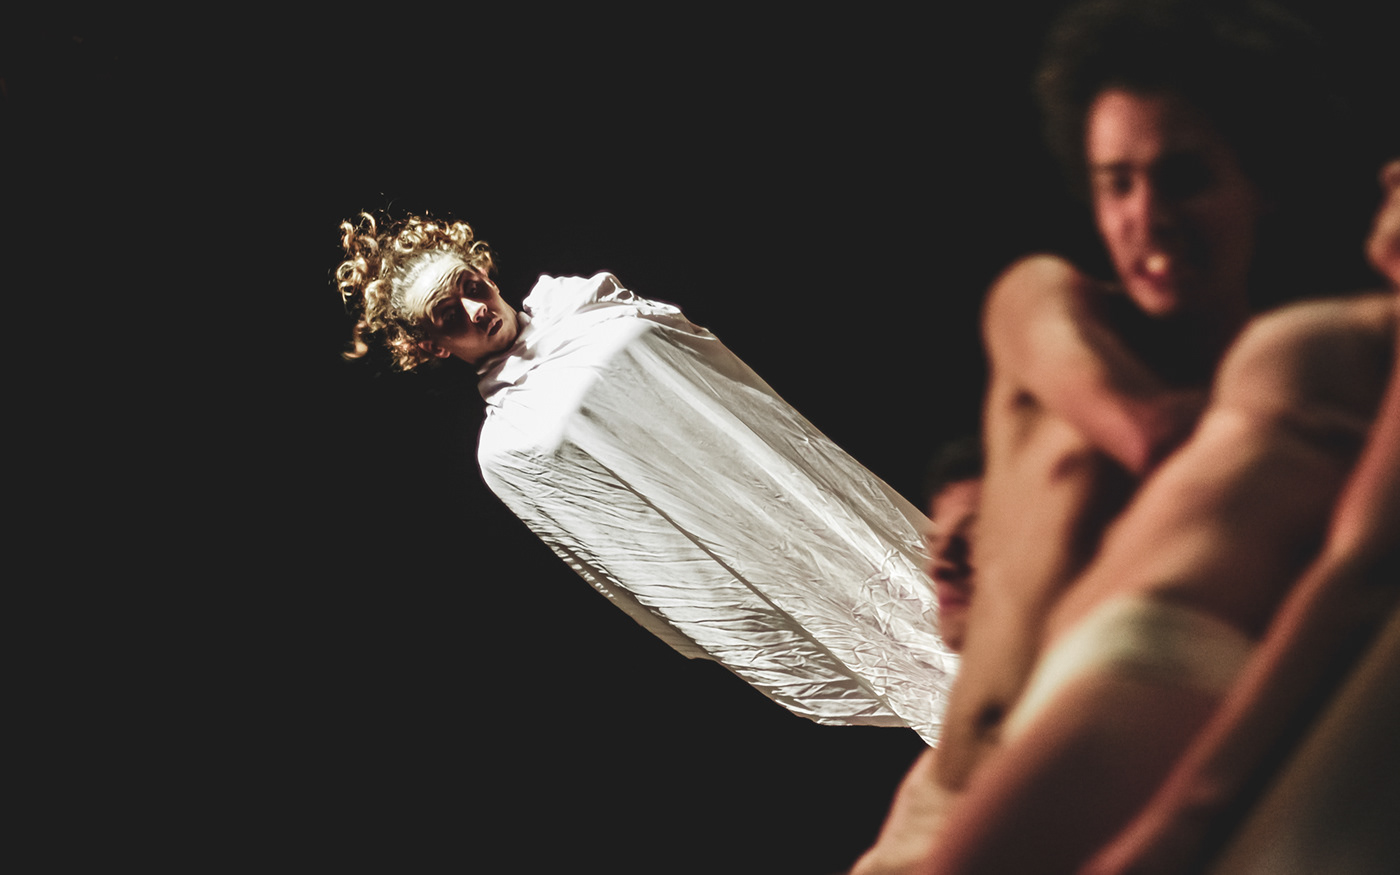 espetáculo artes cênicas teatro apresentação performasse corpo espaço drama